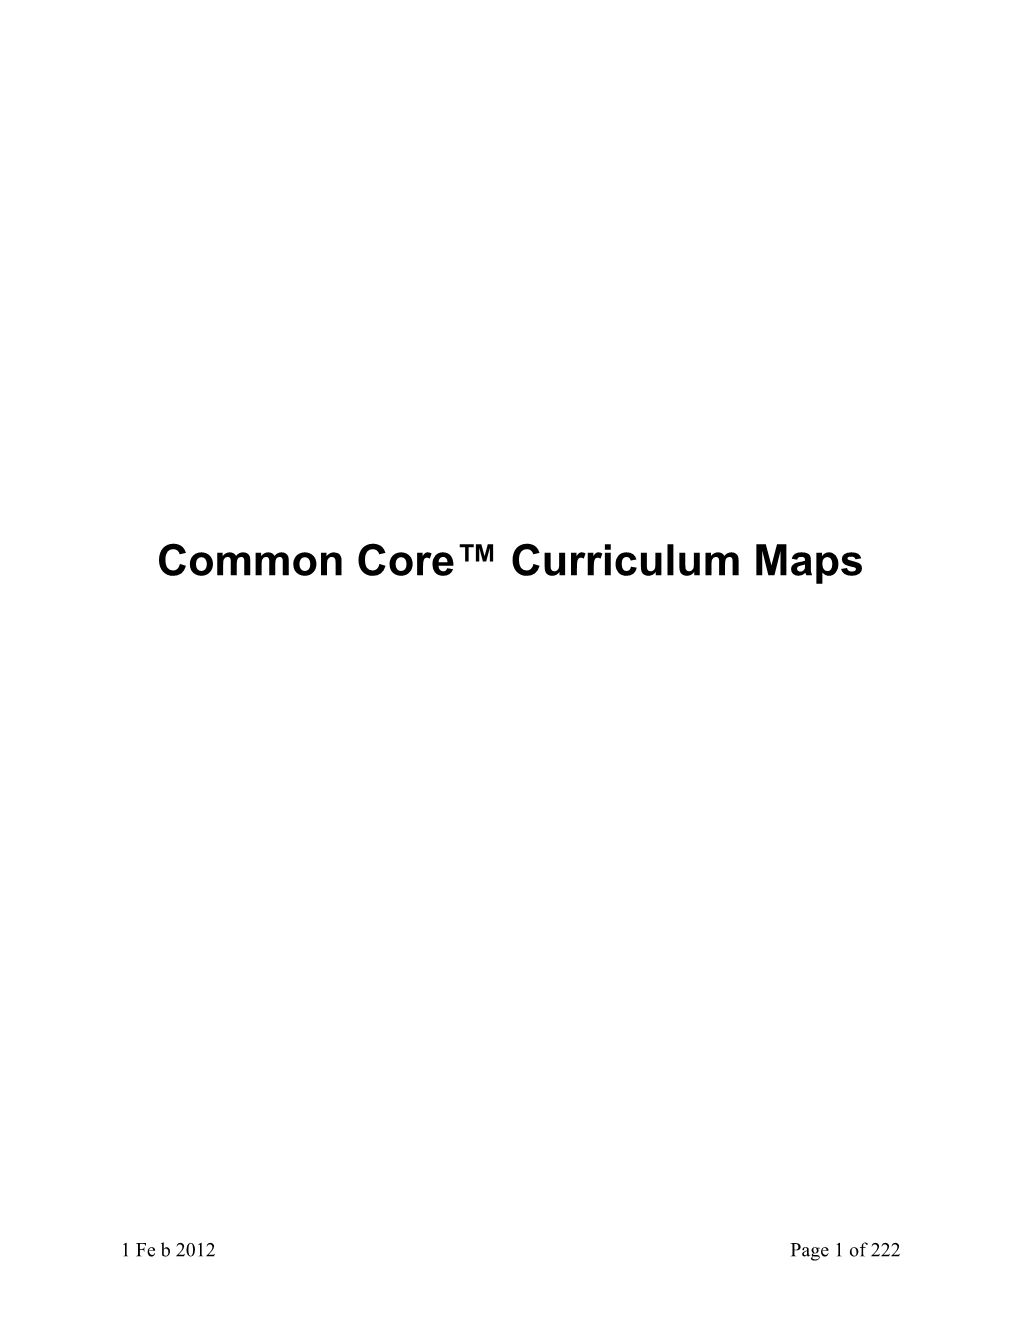 Common Core Curriculum Maps